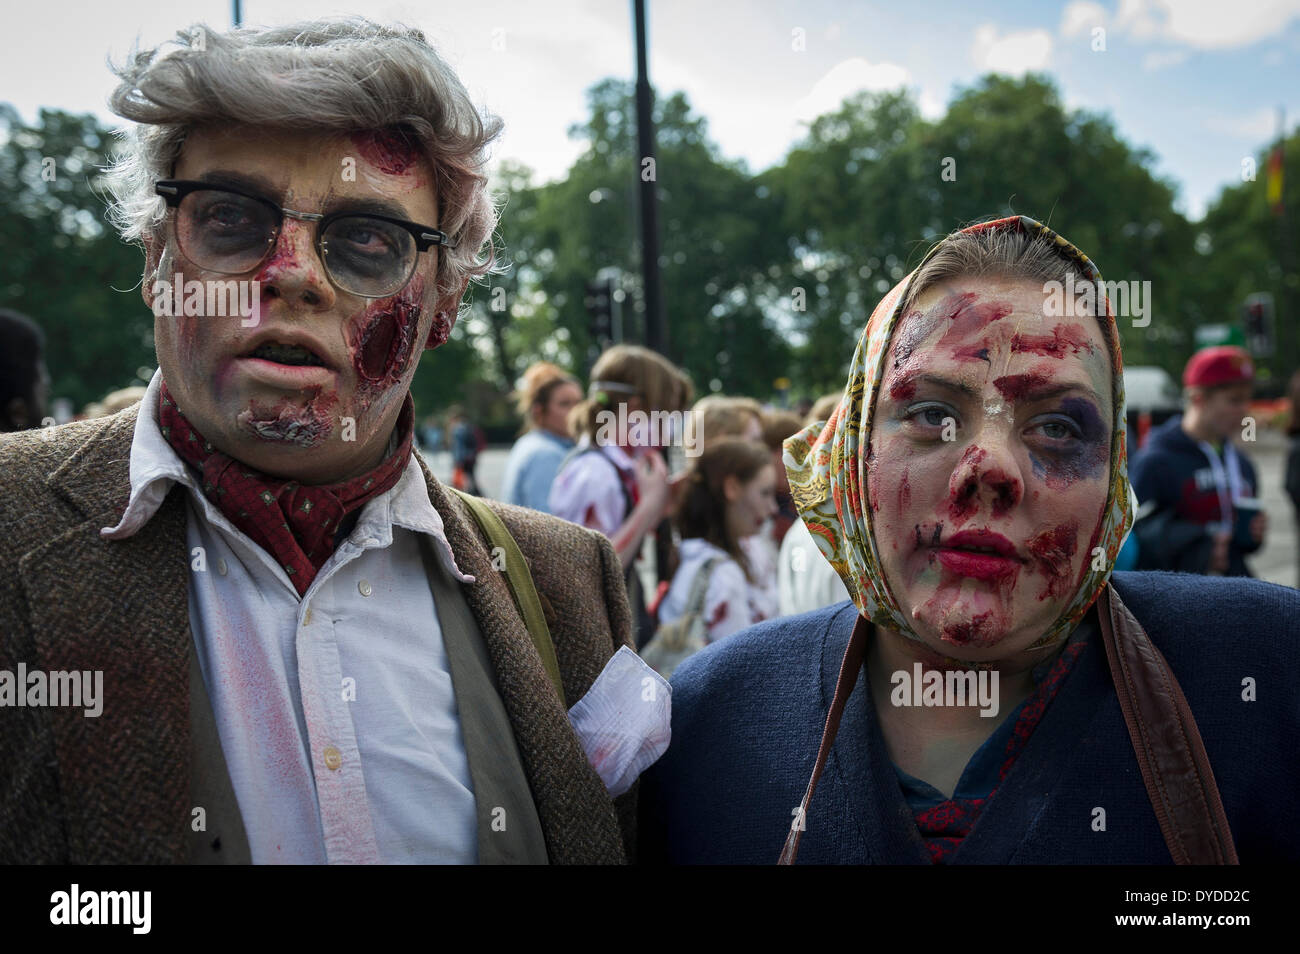 Les participants à l'assemblée annuelle de Londres Zombie Invasion de la collecte de fonds pour les sans-abri St Mungo's la charité. Banque D'Images